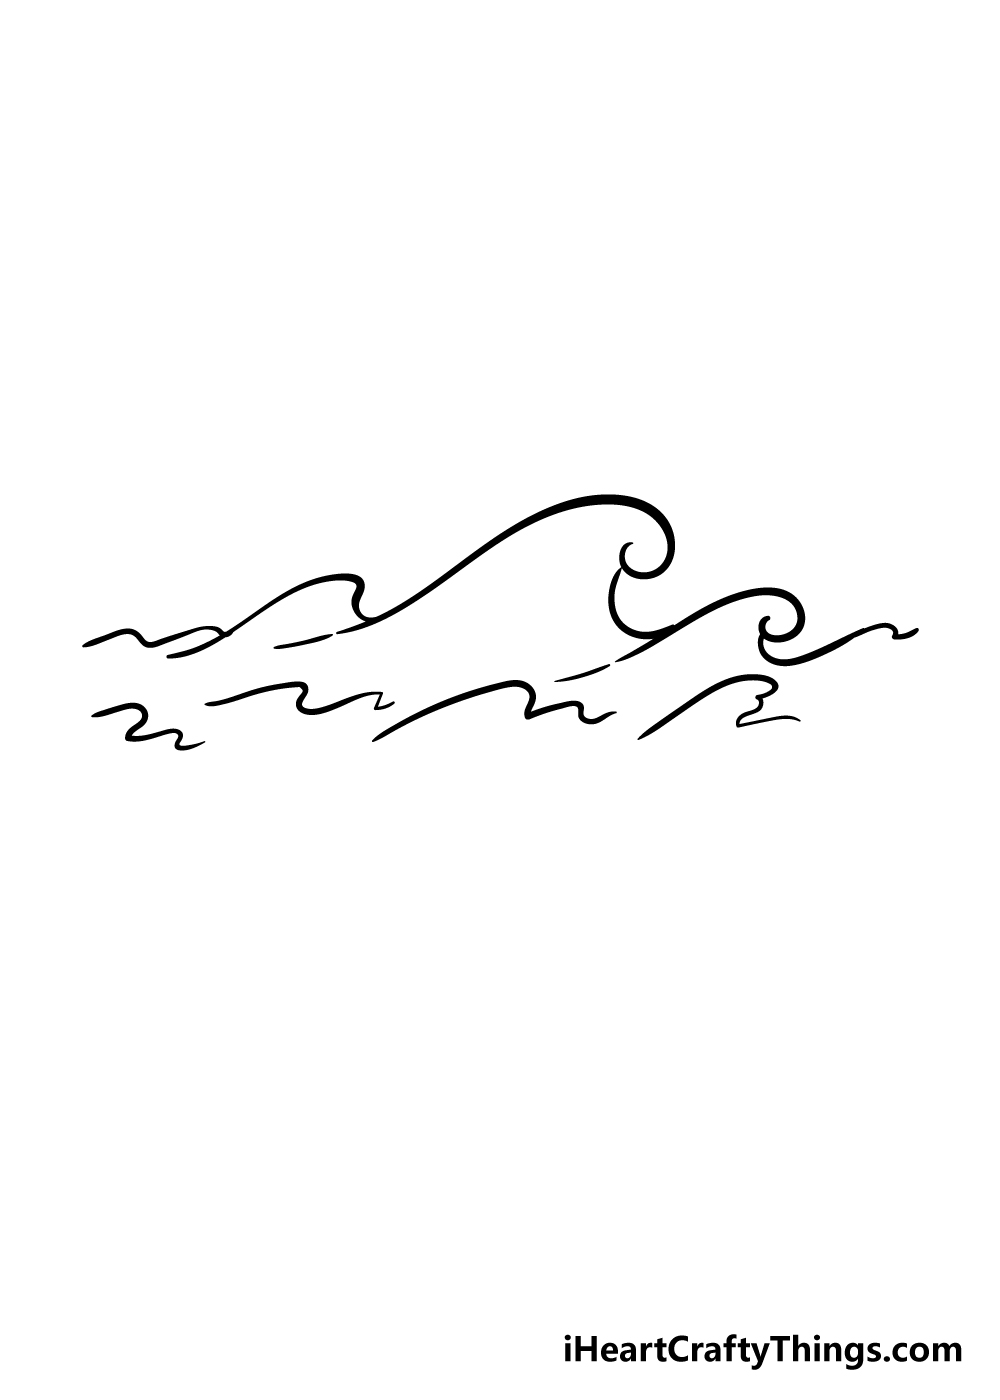 Waves 5 1 - Hướng dẫn chi tiết cách vẽ sóng biển đơn giản với 6 bước cơ bản